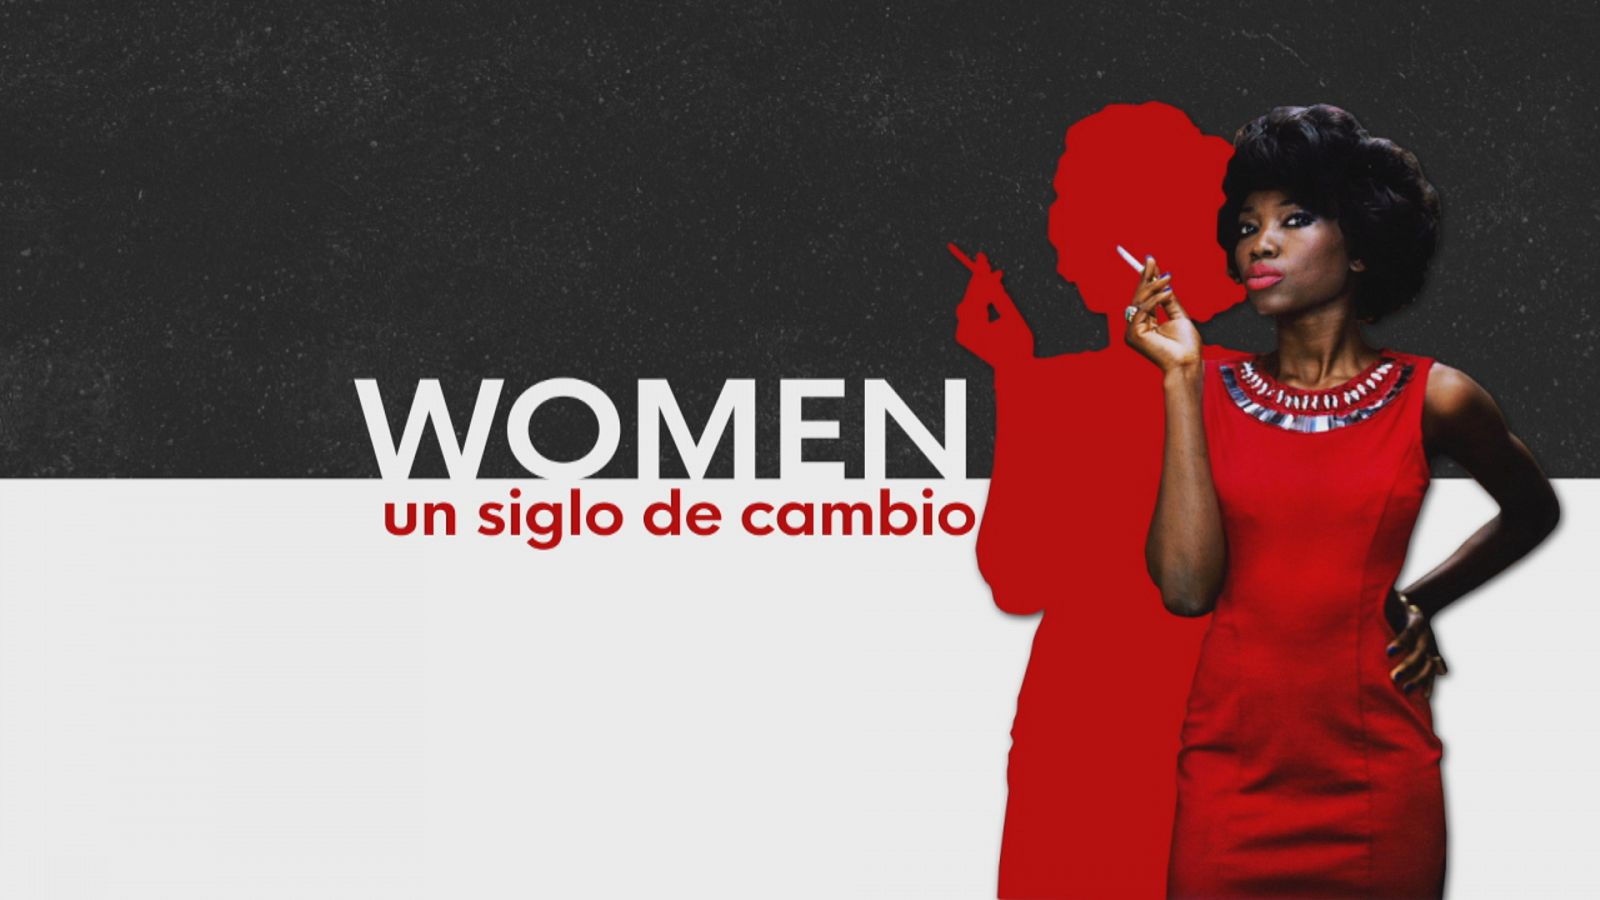 Exposición "WOMEN" en Málaga